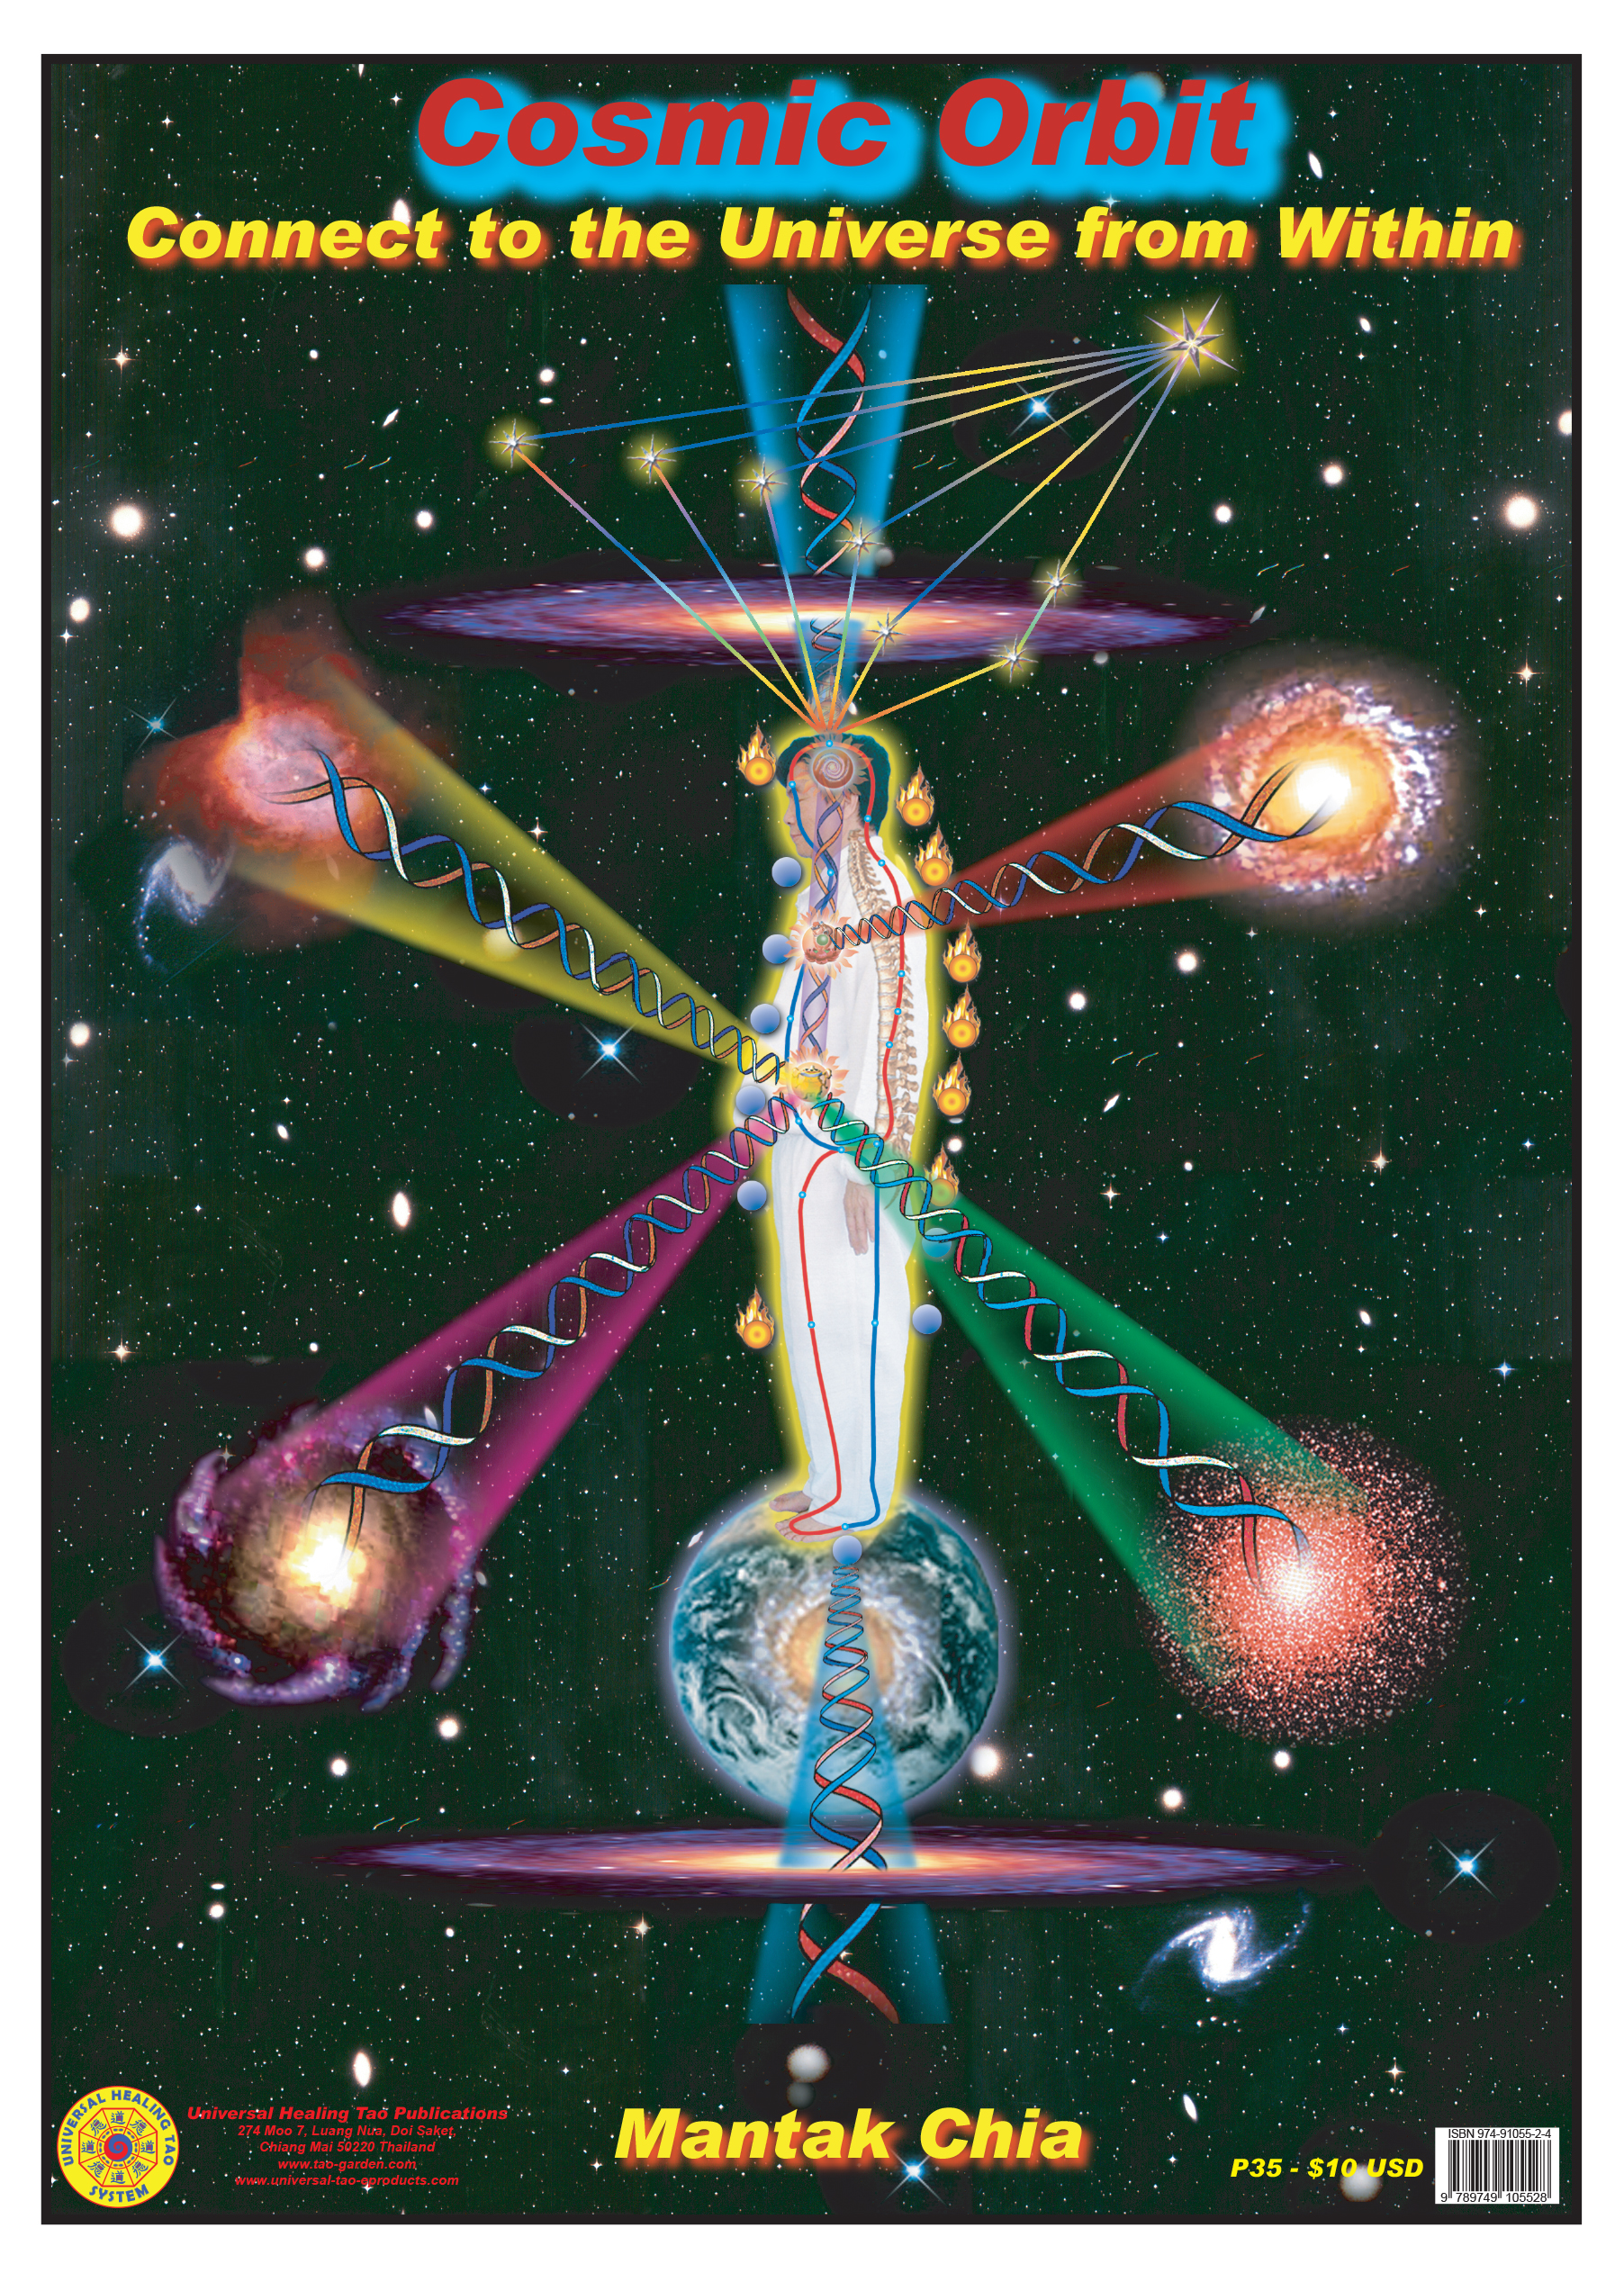 Cosmic Orbit (E-Poster) [DL-P35]